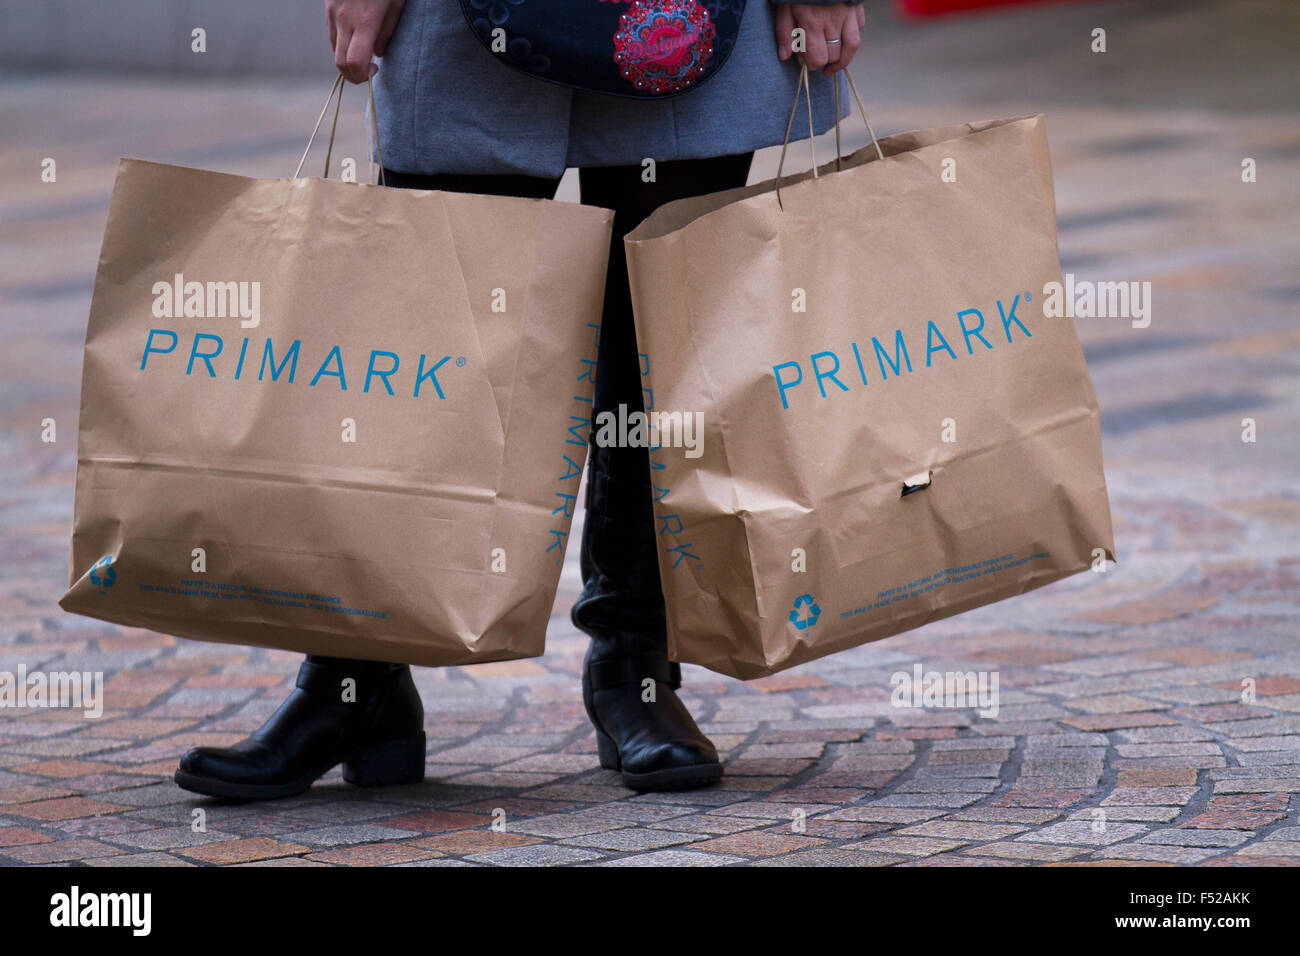 Gli amanti dello shopping con la sacca di Primark store sacchetti; acquisti presso Houndshill Shopping Centre, Banca Hey St, Blackpool FY1 4RY Foto Stock